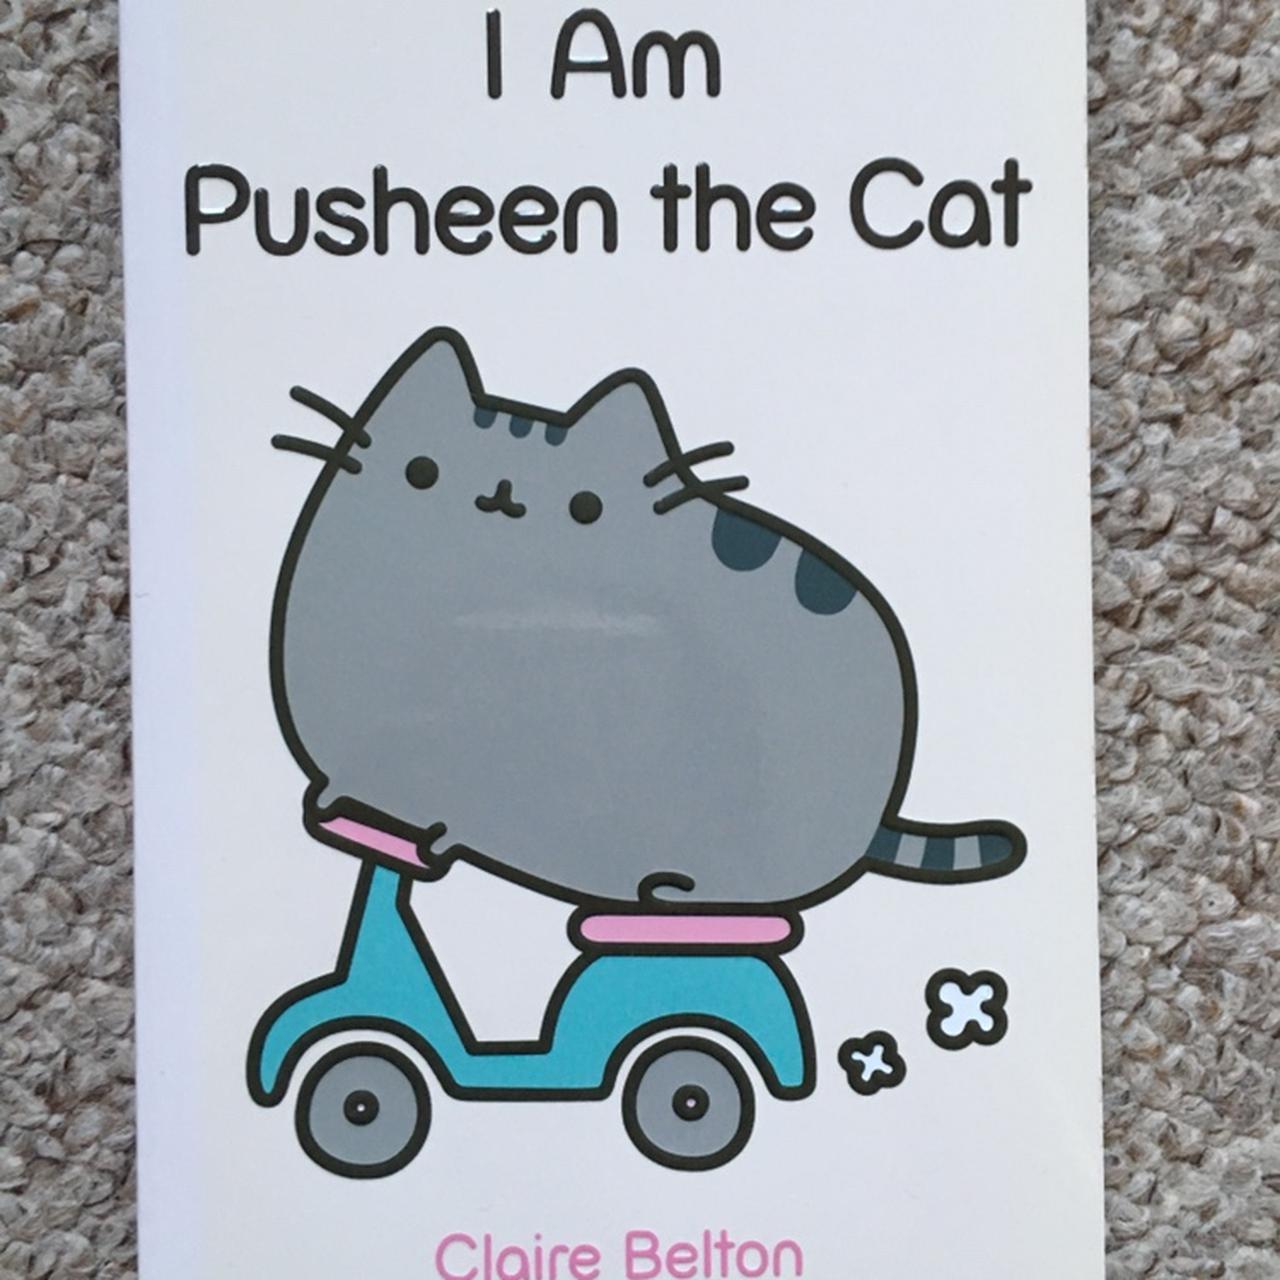 I Am Pusheen the Cat (A Pusheen Book)